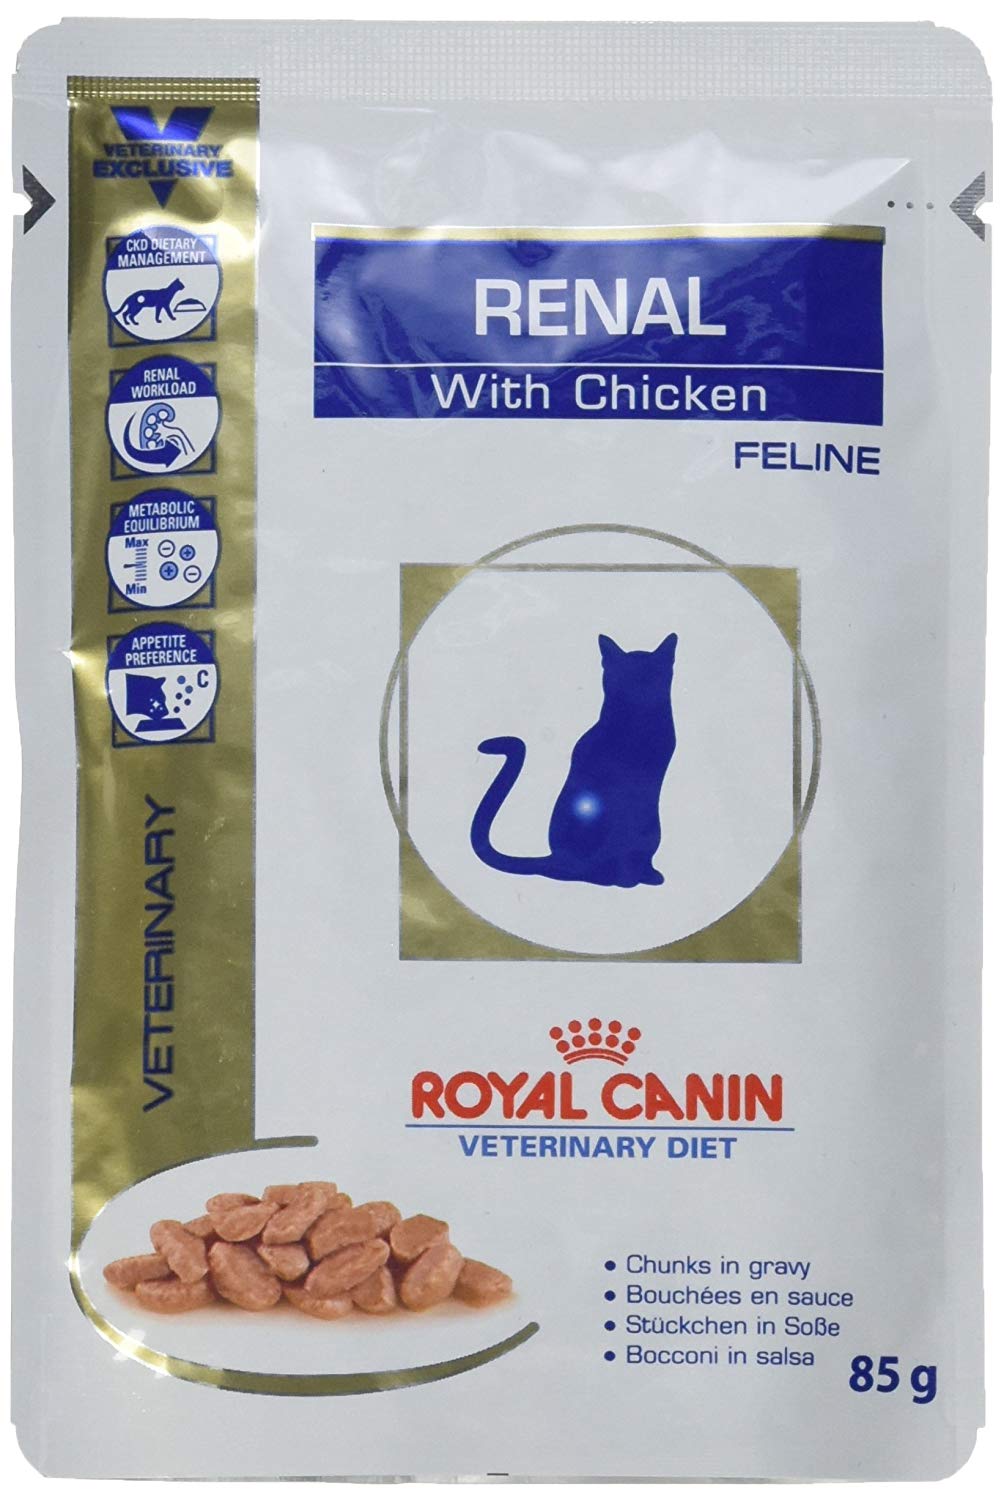 Роял канин ренал для кошек купить. Royal Canin renal для кошек. Royal Canin renal with Chicken для кошек. Royal Canin renal Feline Chicken. Ренал Advanced для кошек.